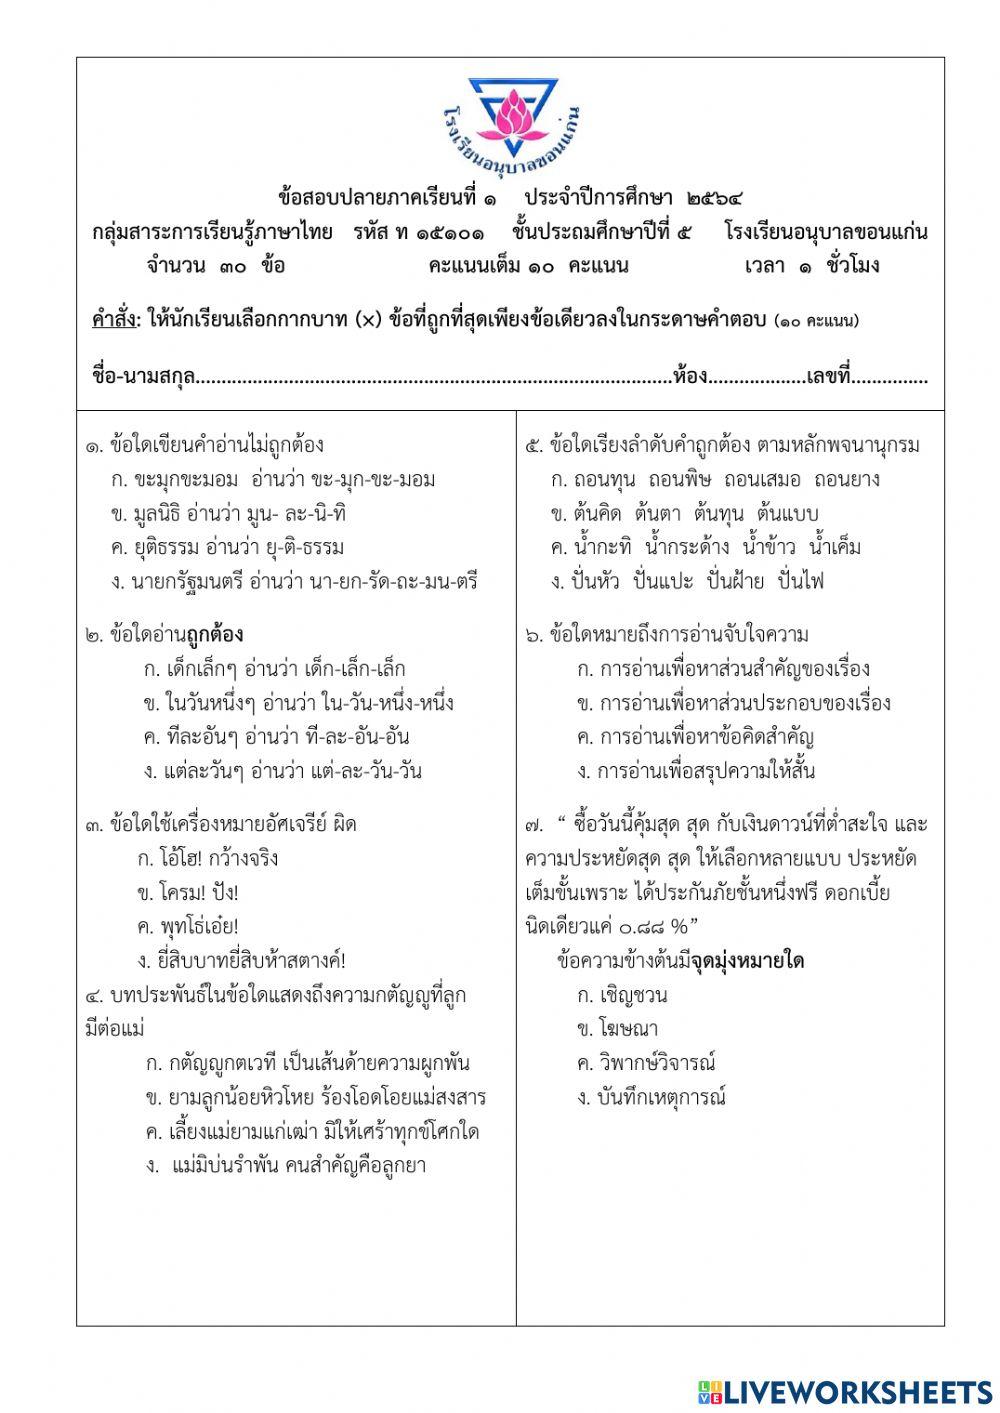 ข้อสอบปลายภาคเรียนที่ 1 ประจำปีการศึกษา 2564 วิชาภาษาไทย ป.5-7